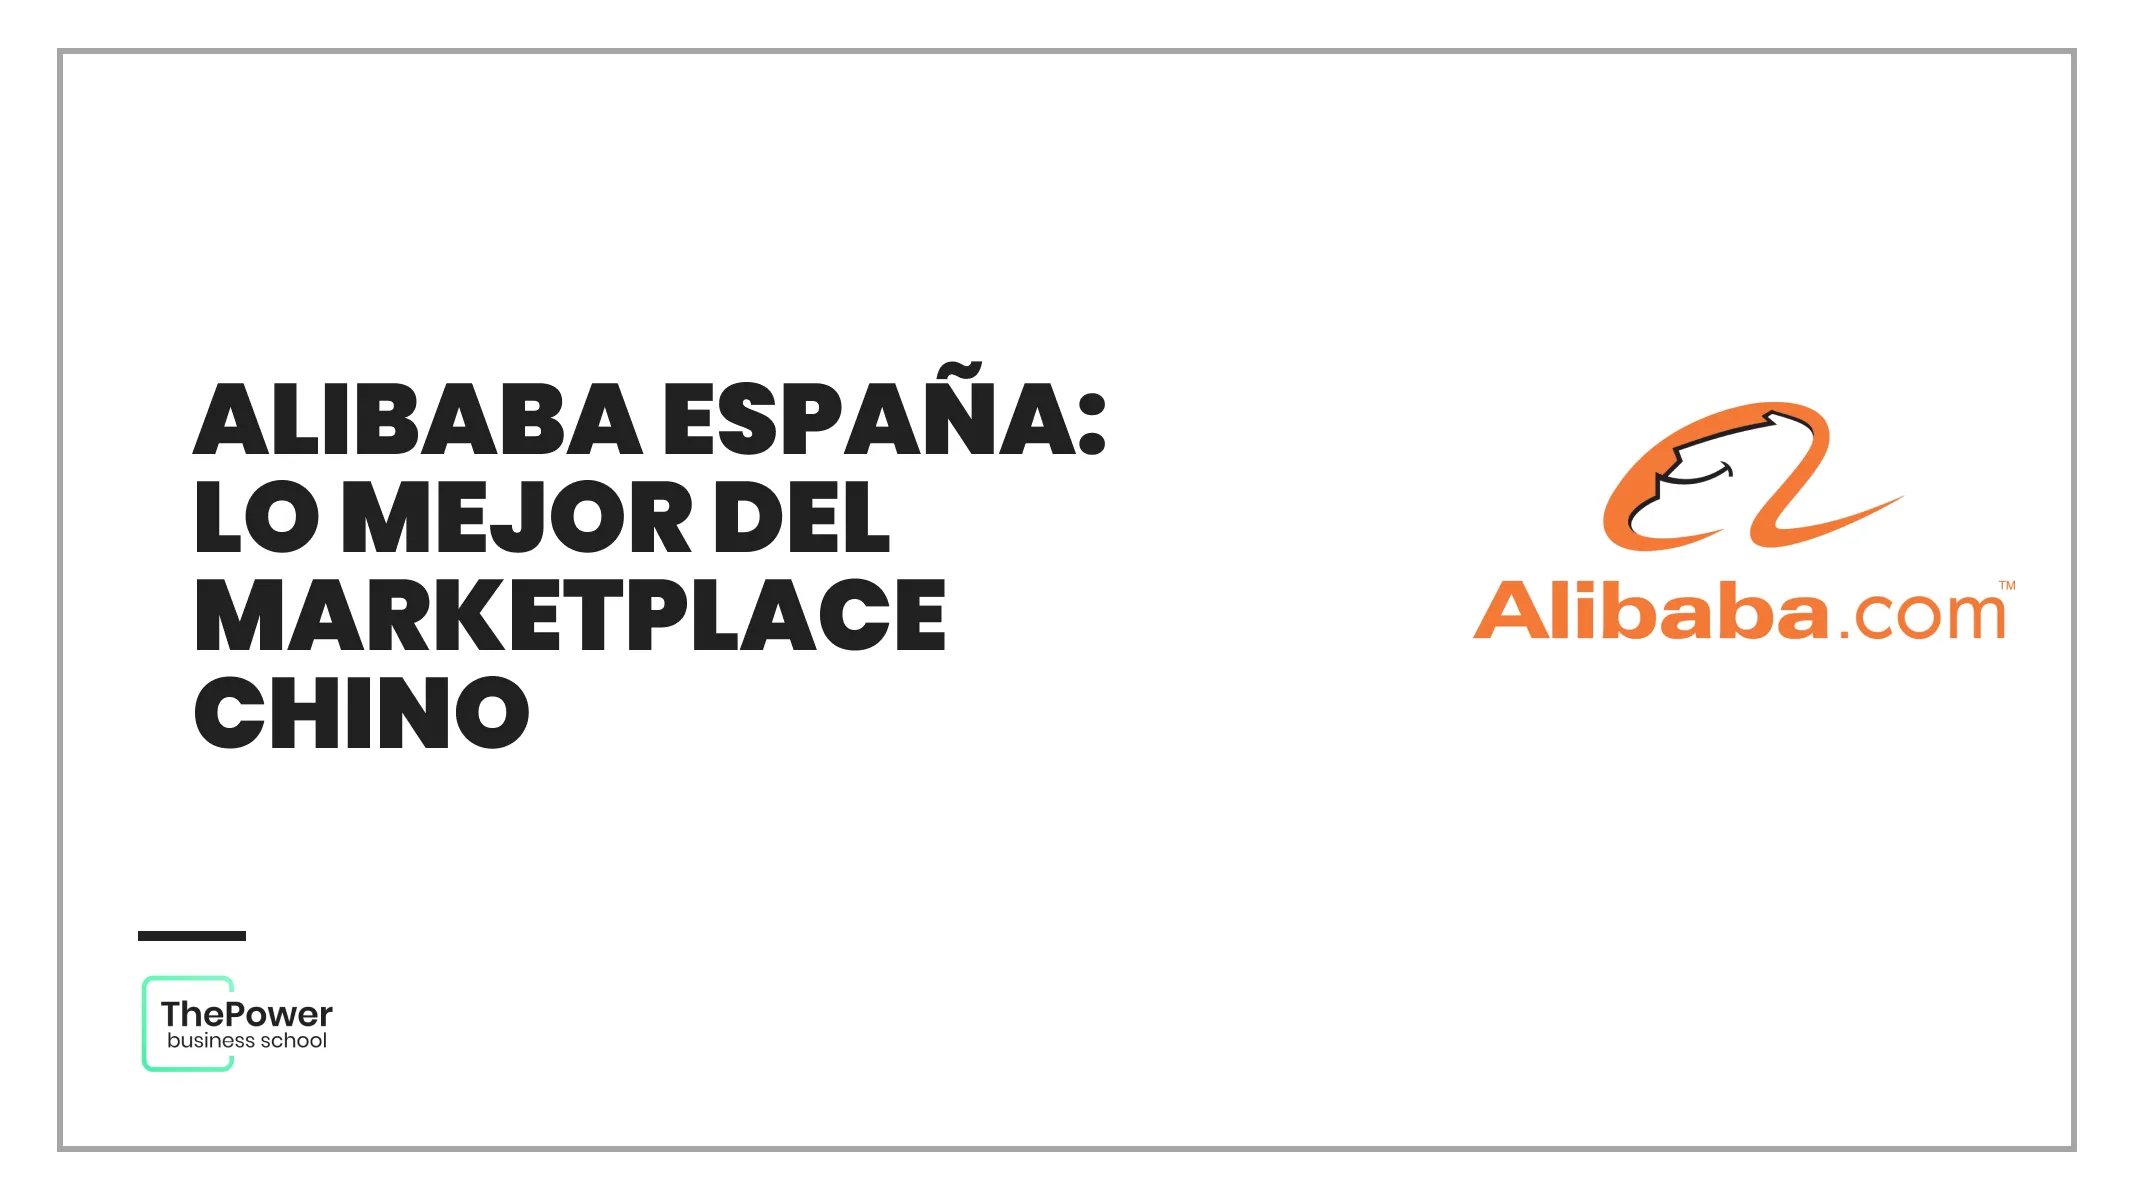 Alibaba España: lo mejor del marketplace chino